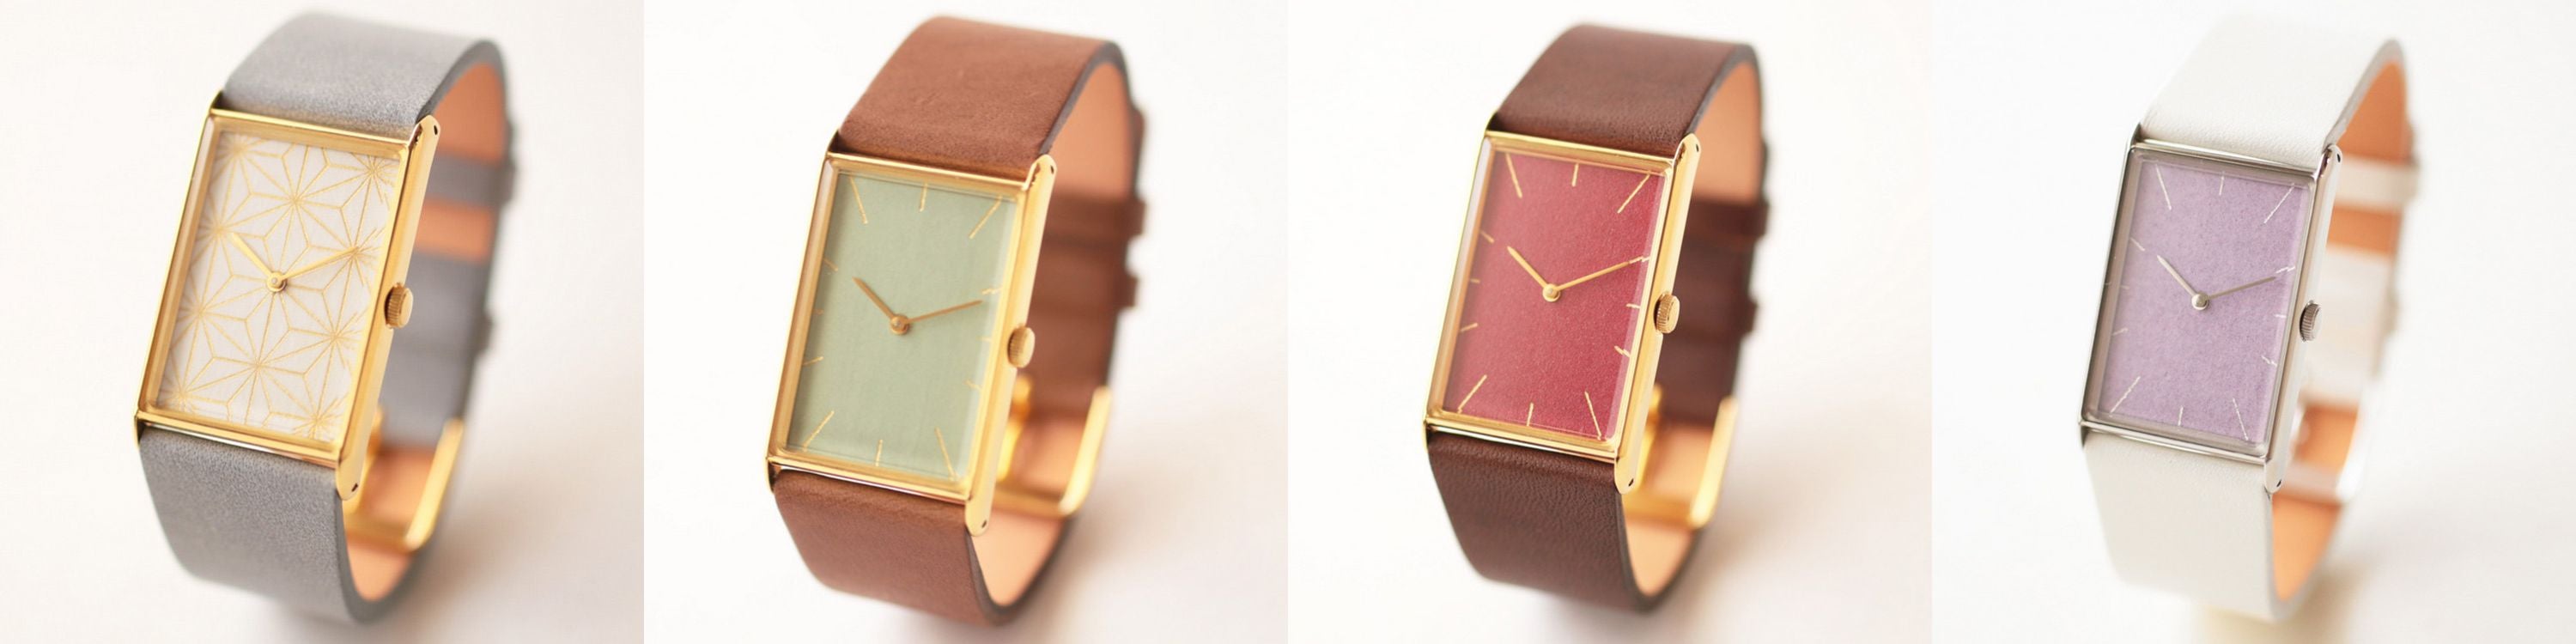 腕時計プレゼントおしゃれレア珍しいキレイな色大人女性気品岩絵の具金箔レディース